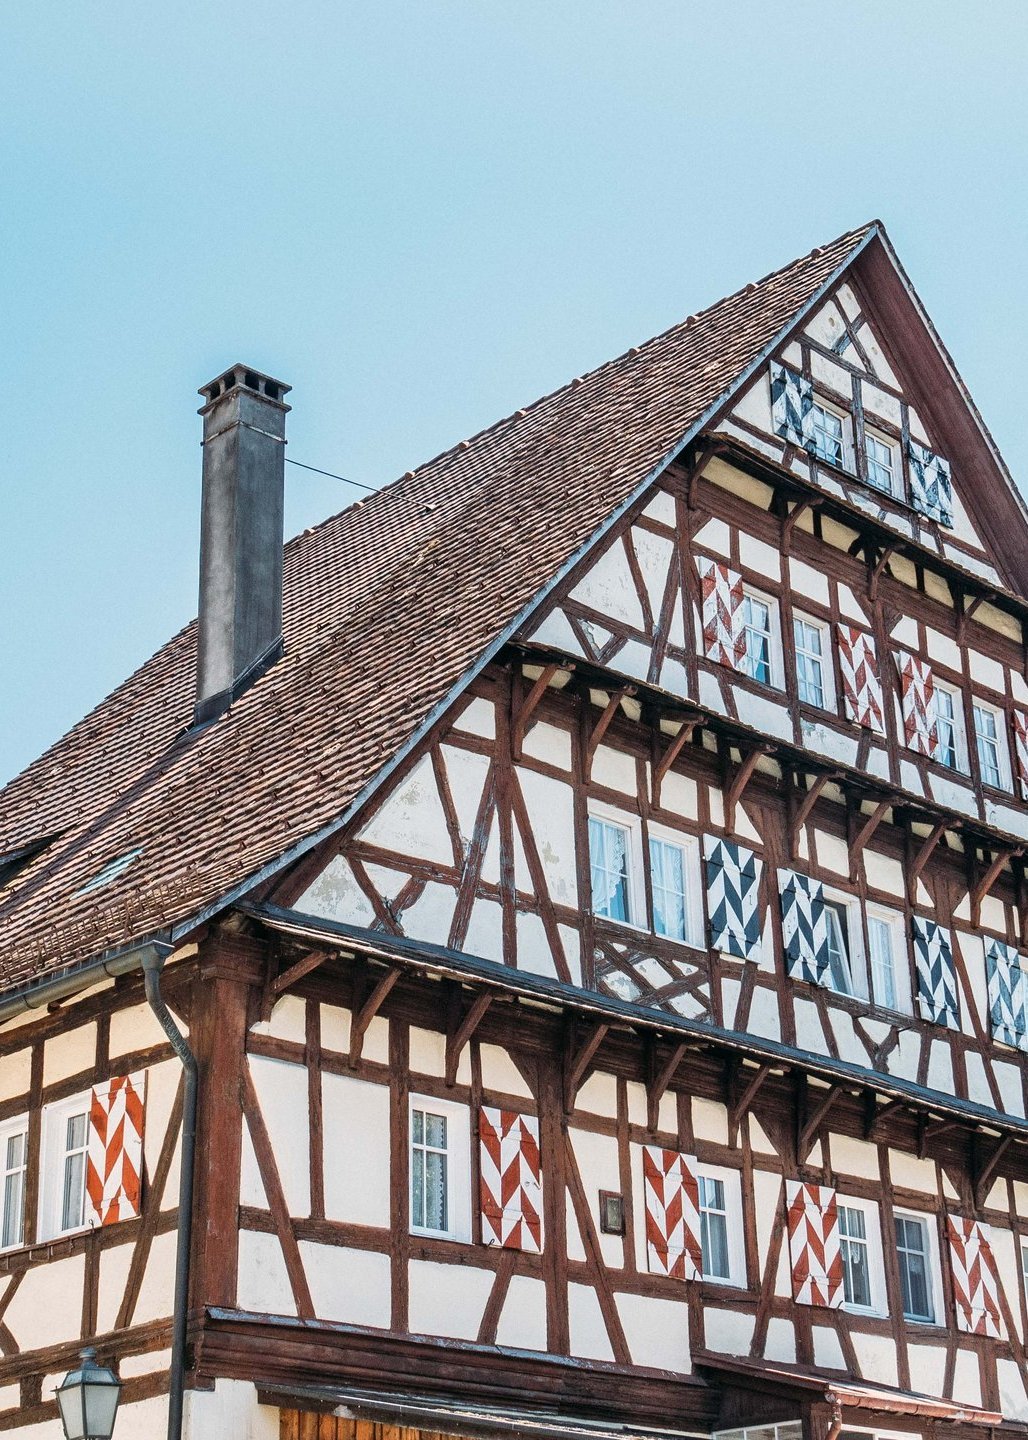 Ein altes, mehrstöckiges Fachwerkhaus in Bregenz